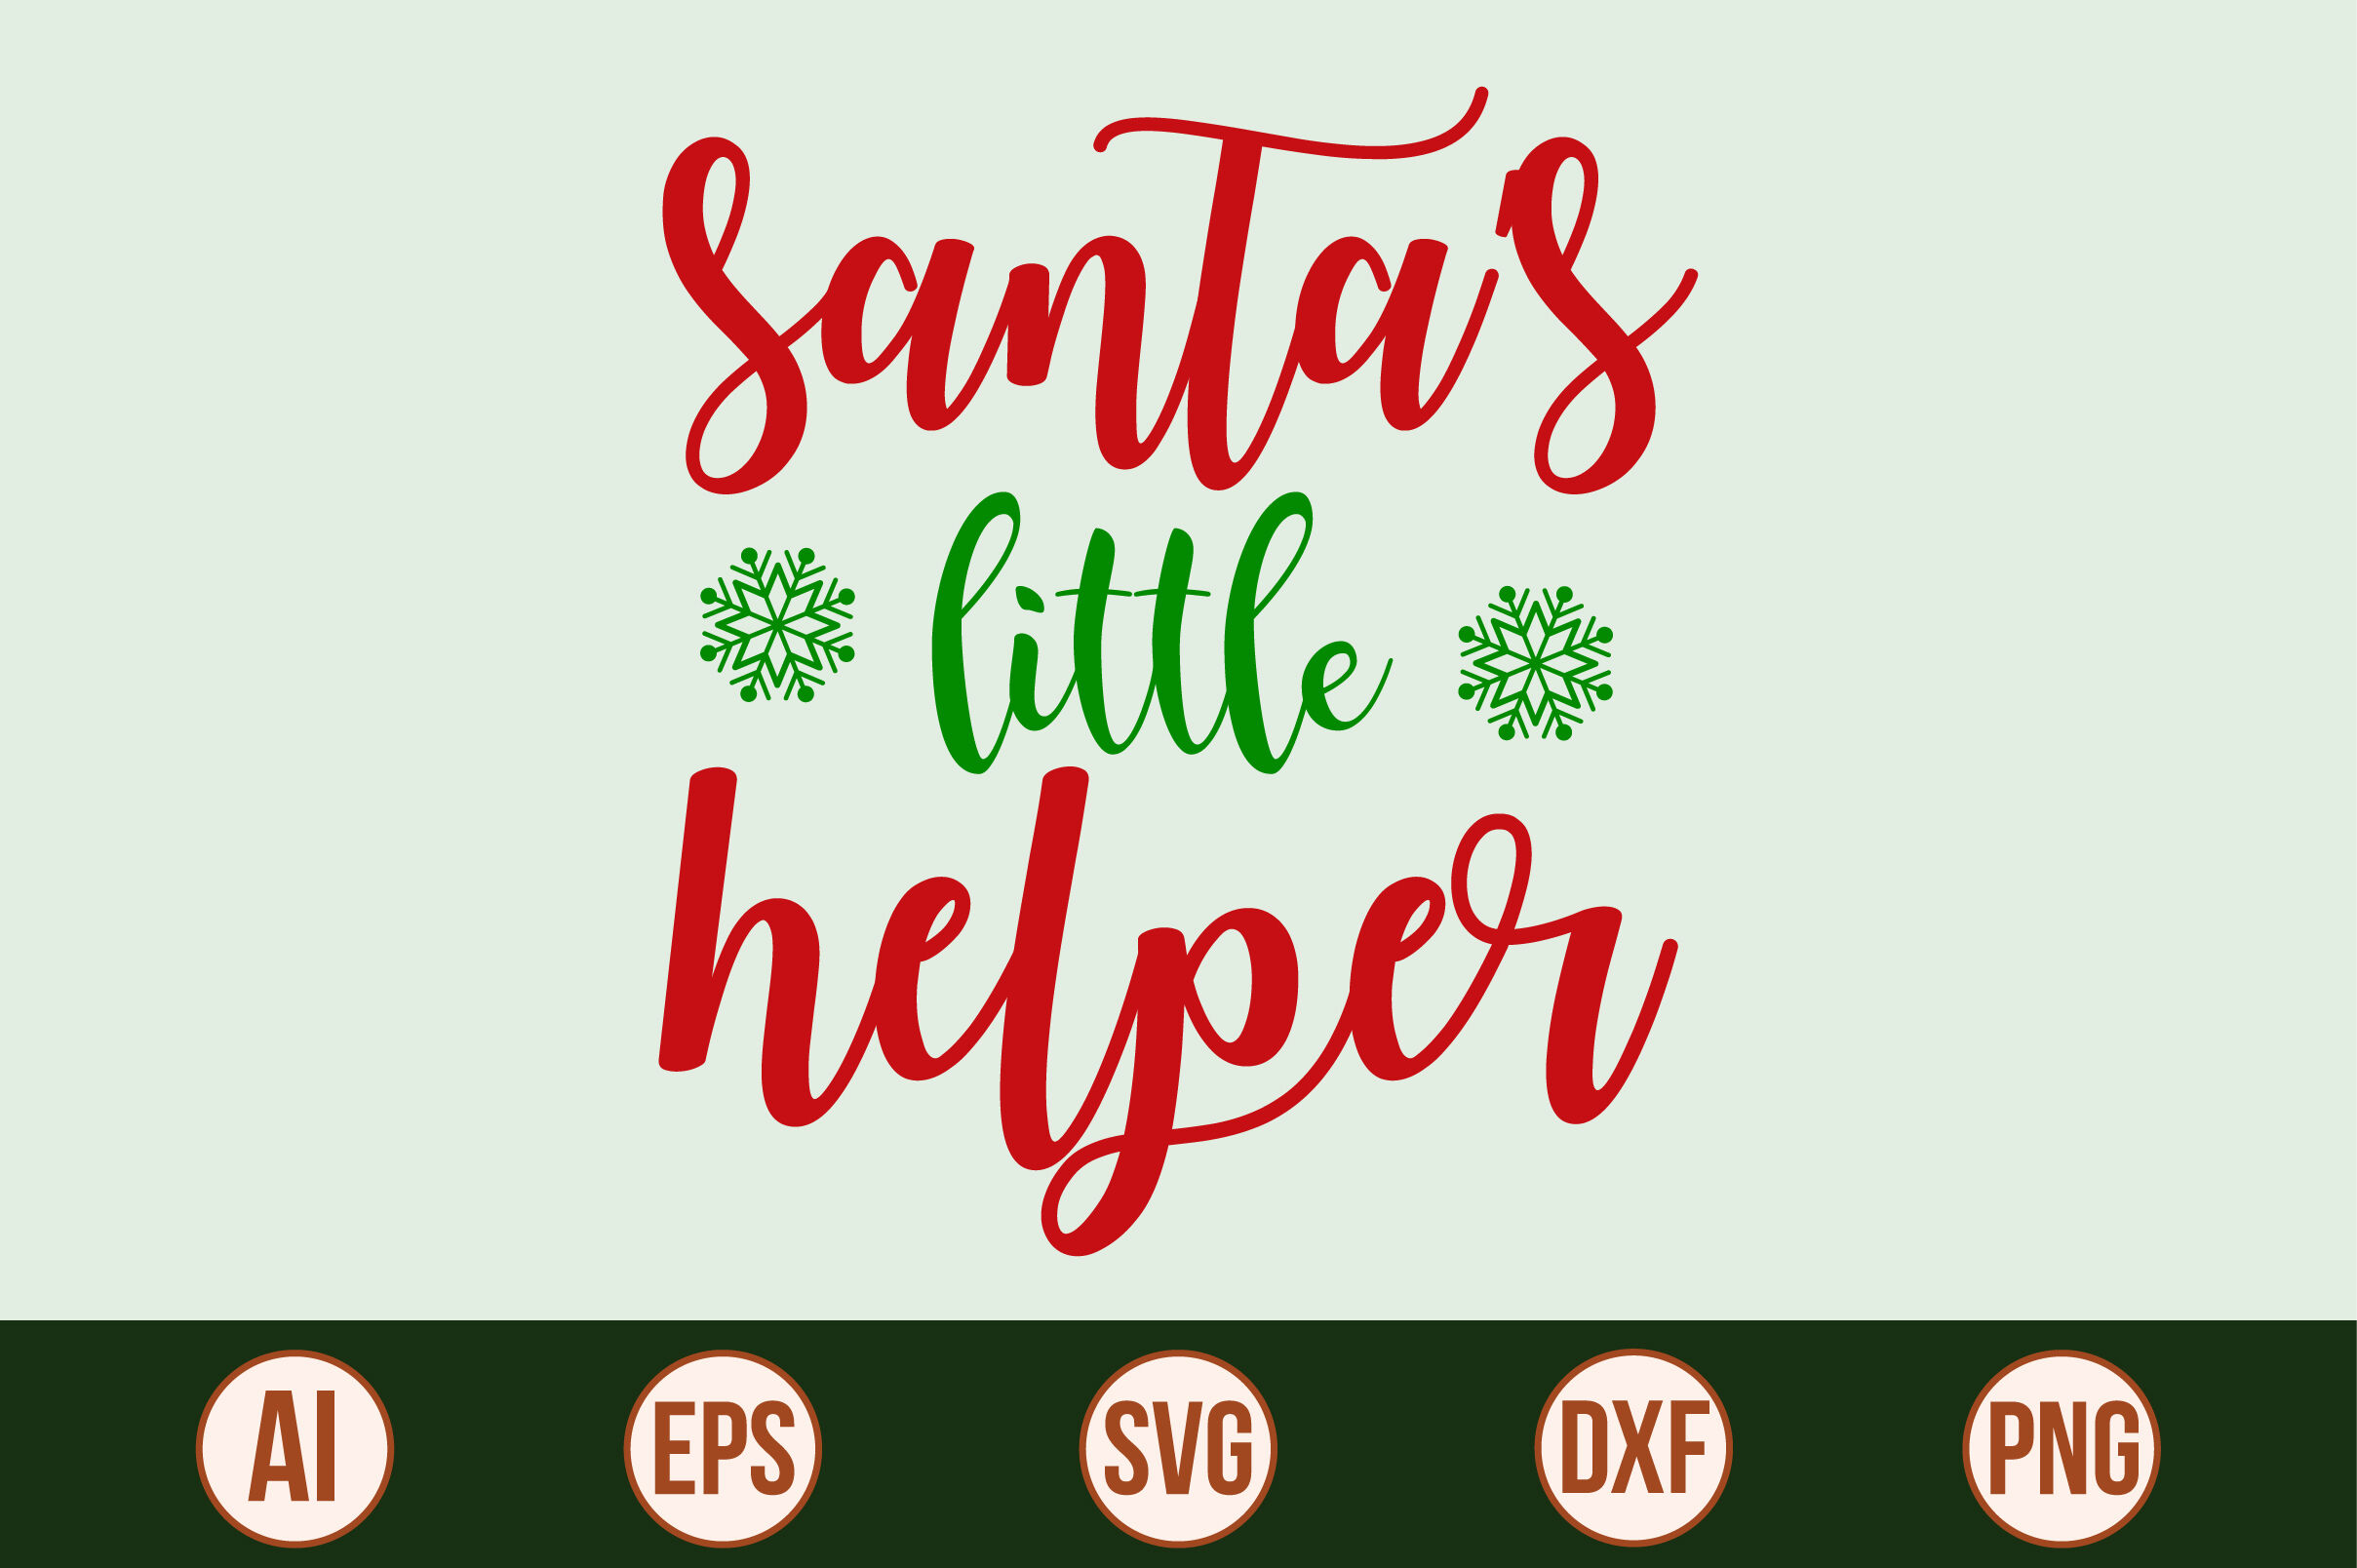 1. "Santa's Little Helper" - wide 3